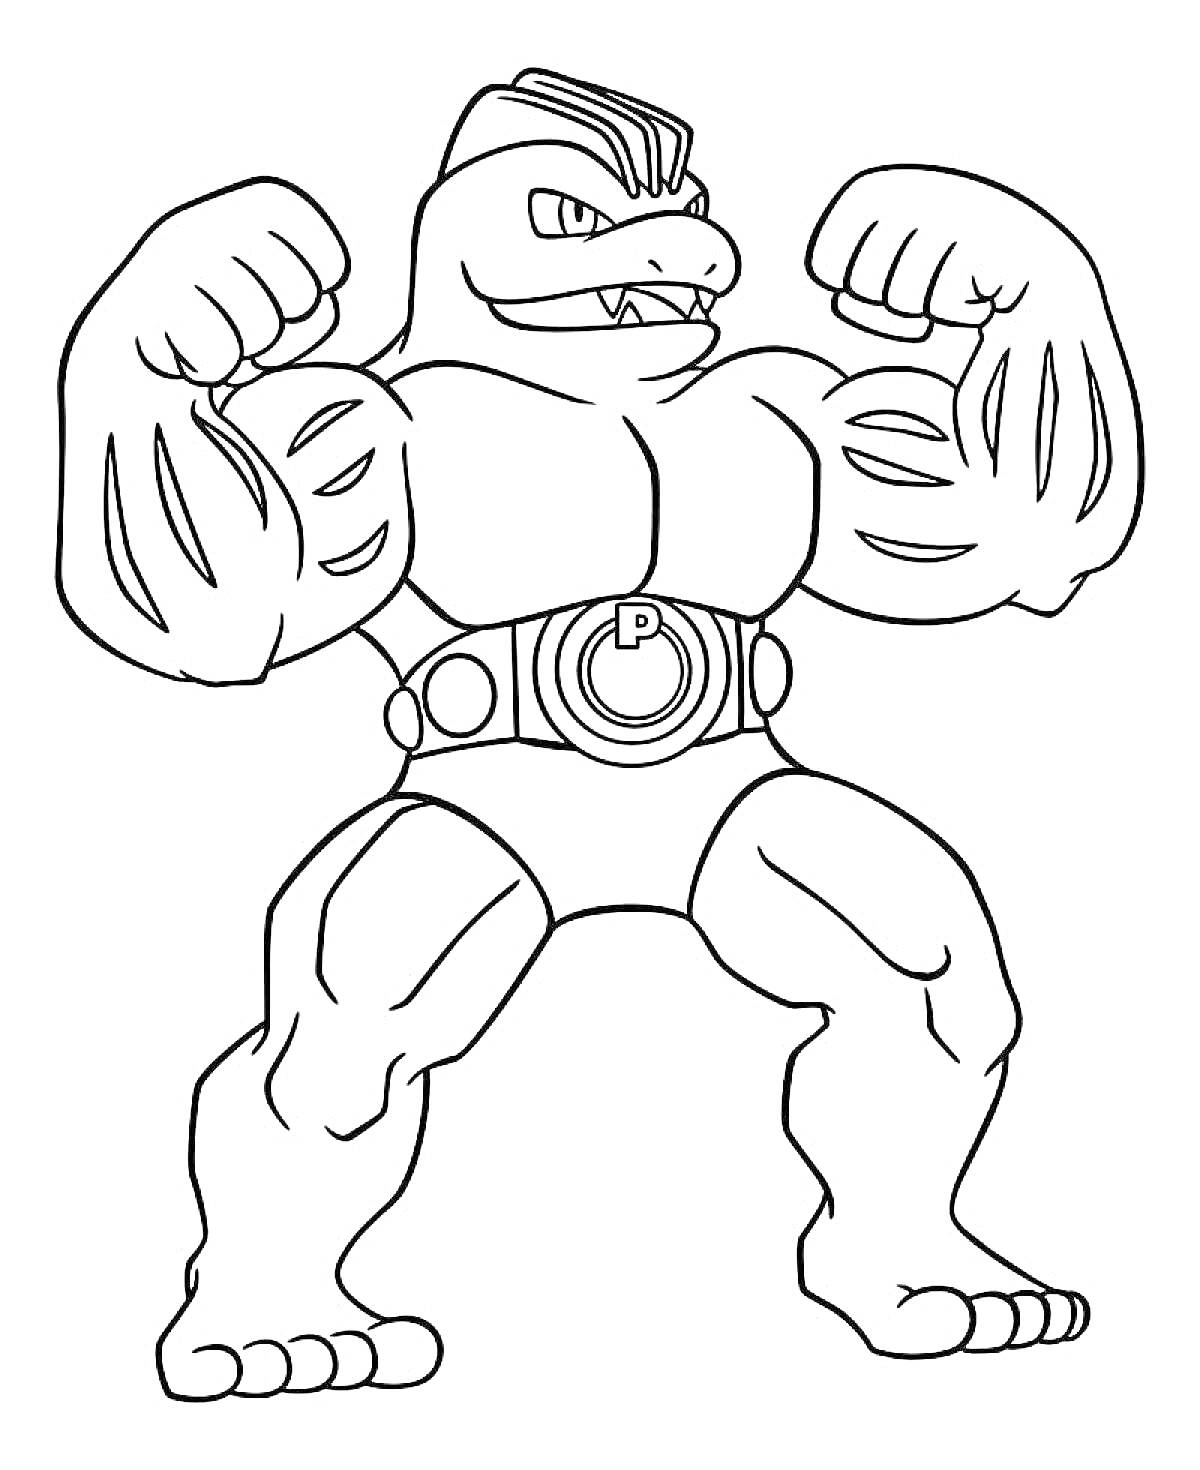 Раскраска Супергерой Гуджитсу с крупными мускулами, ремнем с пряжкой и поднятыми кулаками.